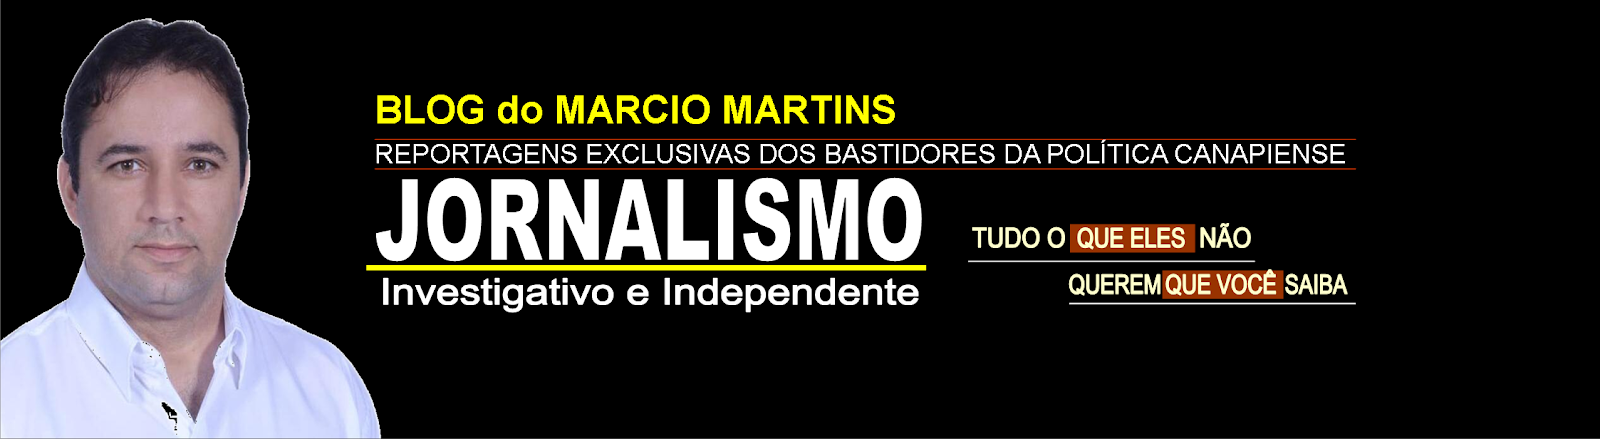 Blog do Marcio Martins